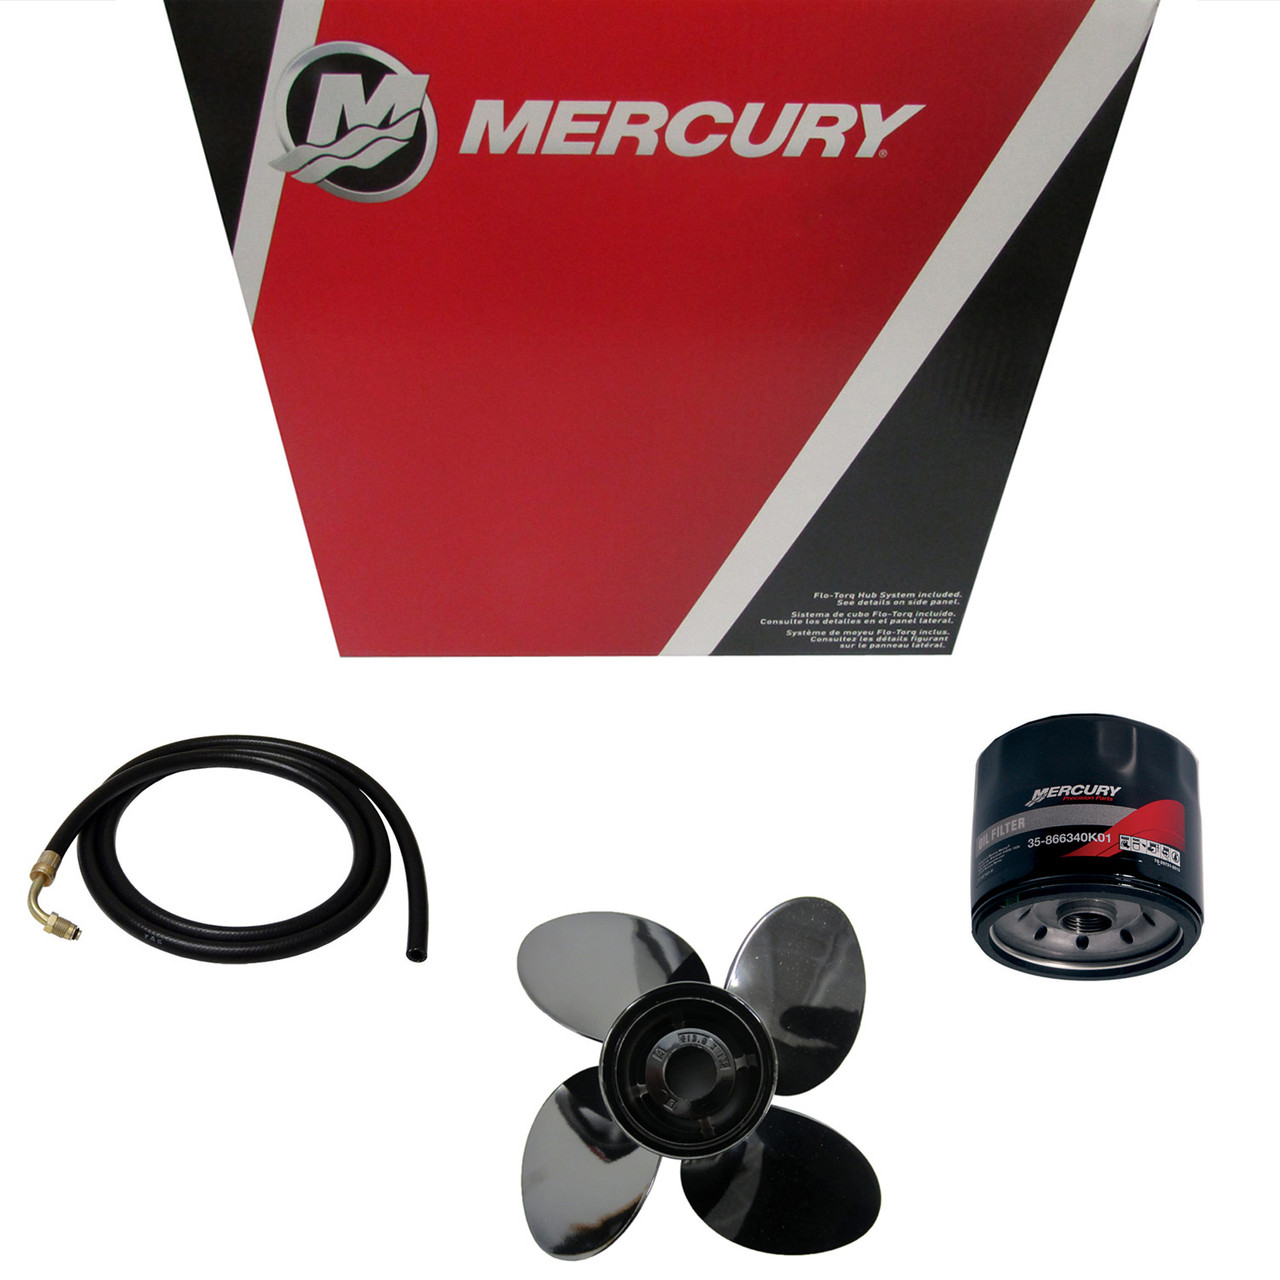 Mercury Marine / Mercruiser New OEM Ring-Retain, 895304